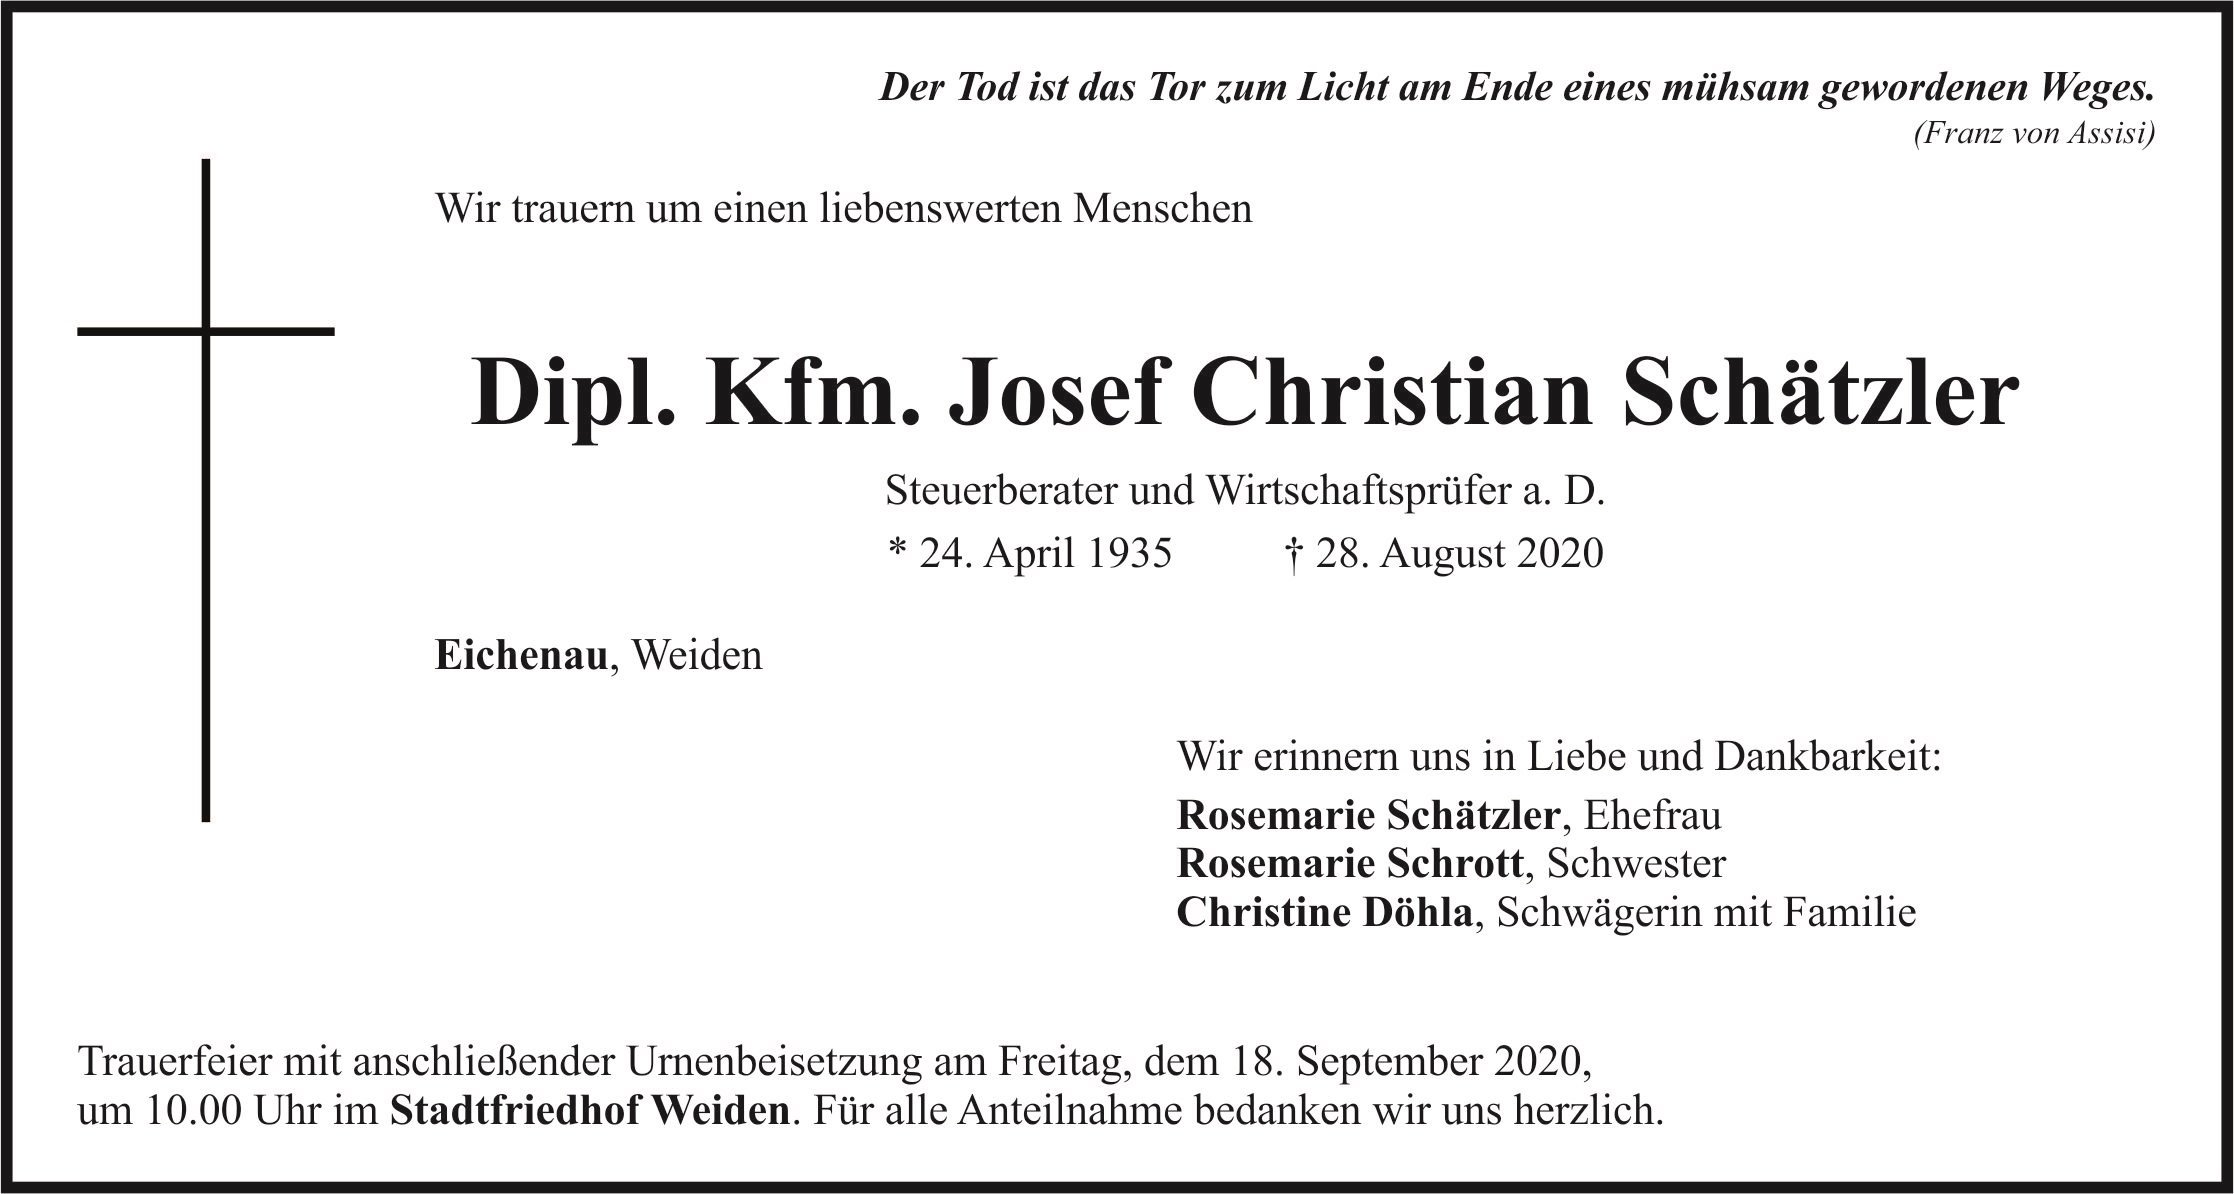 Traueranzeige Josef Christian Schätzler, Eichenau